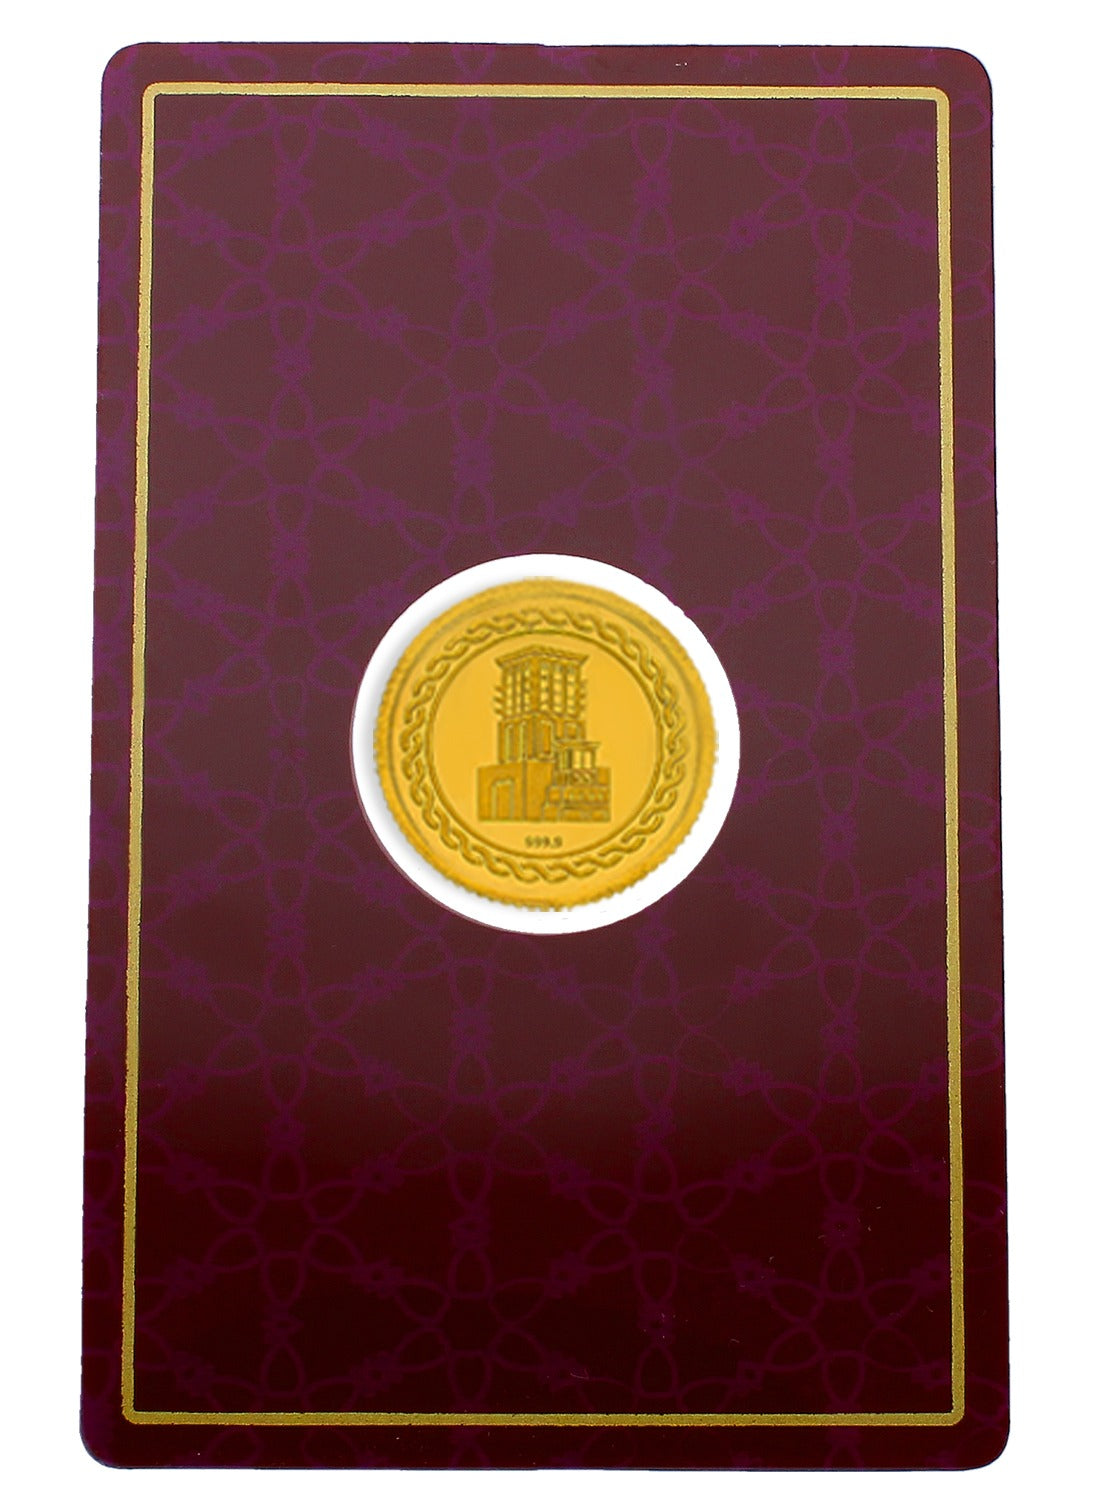 Gold 4 Gram Coin 24KT 999.9 Purity - FKJCON24KU4011